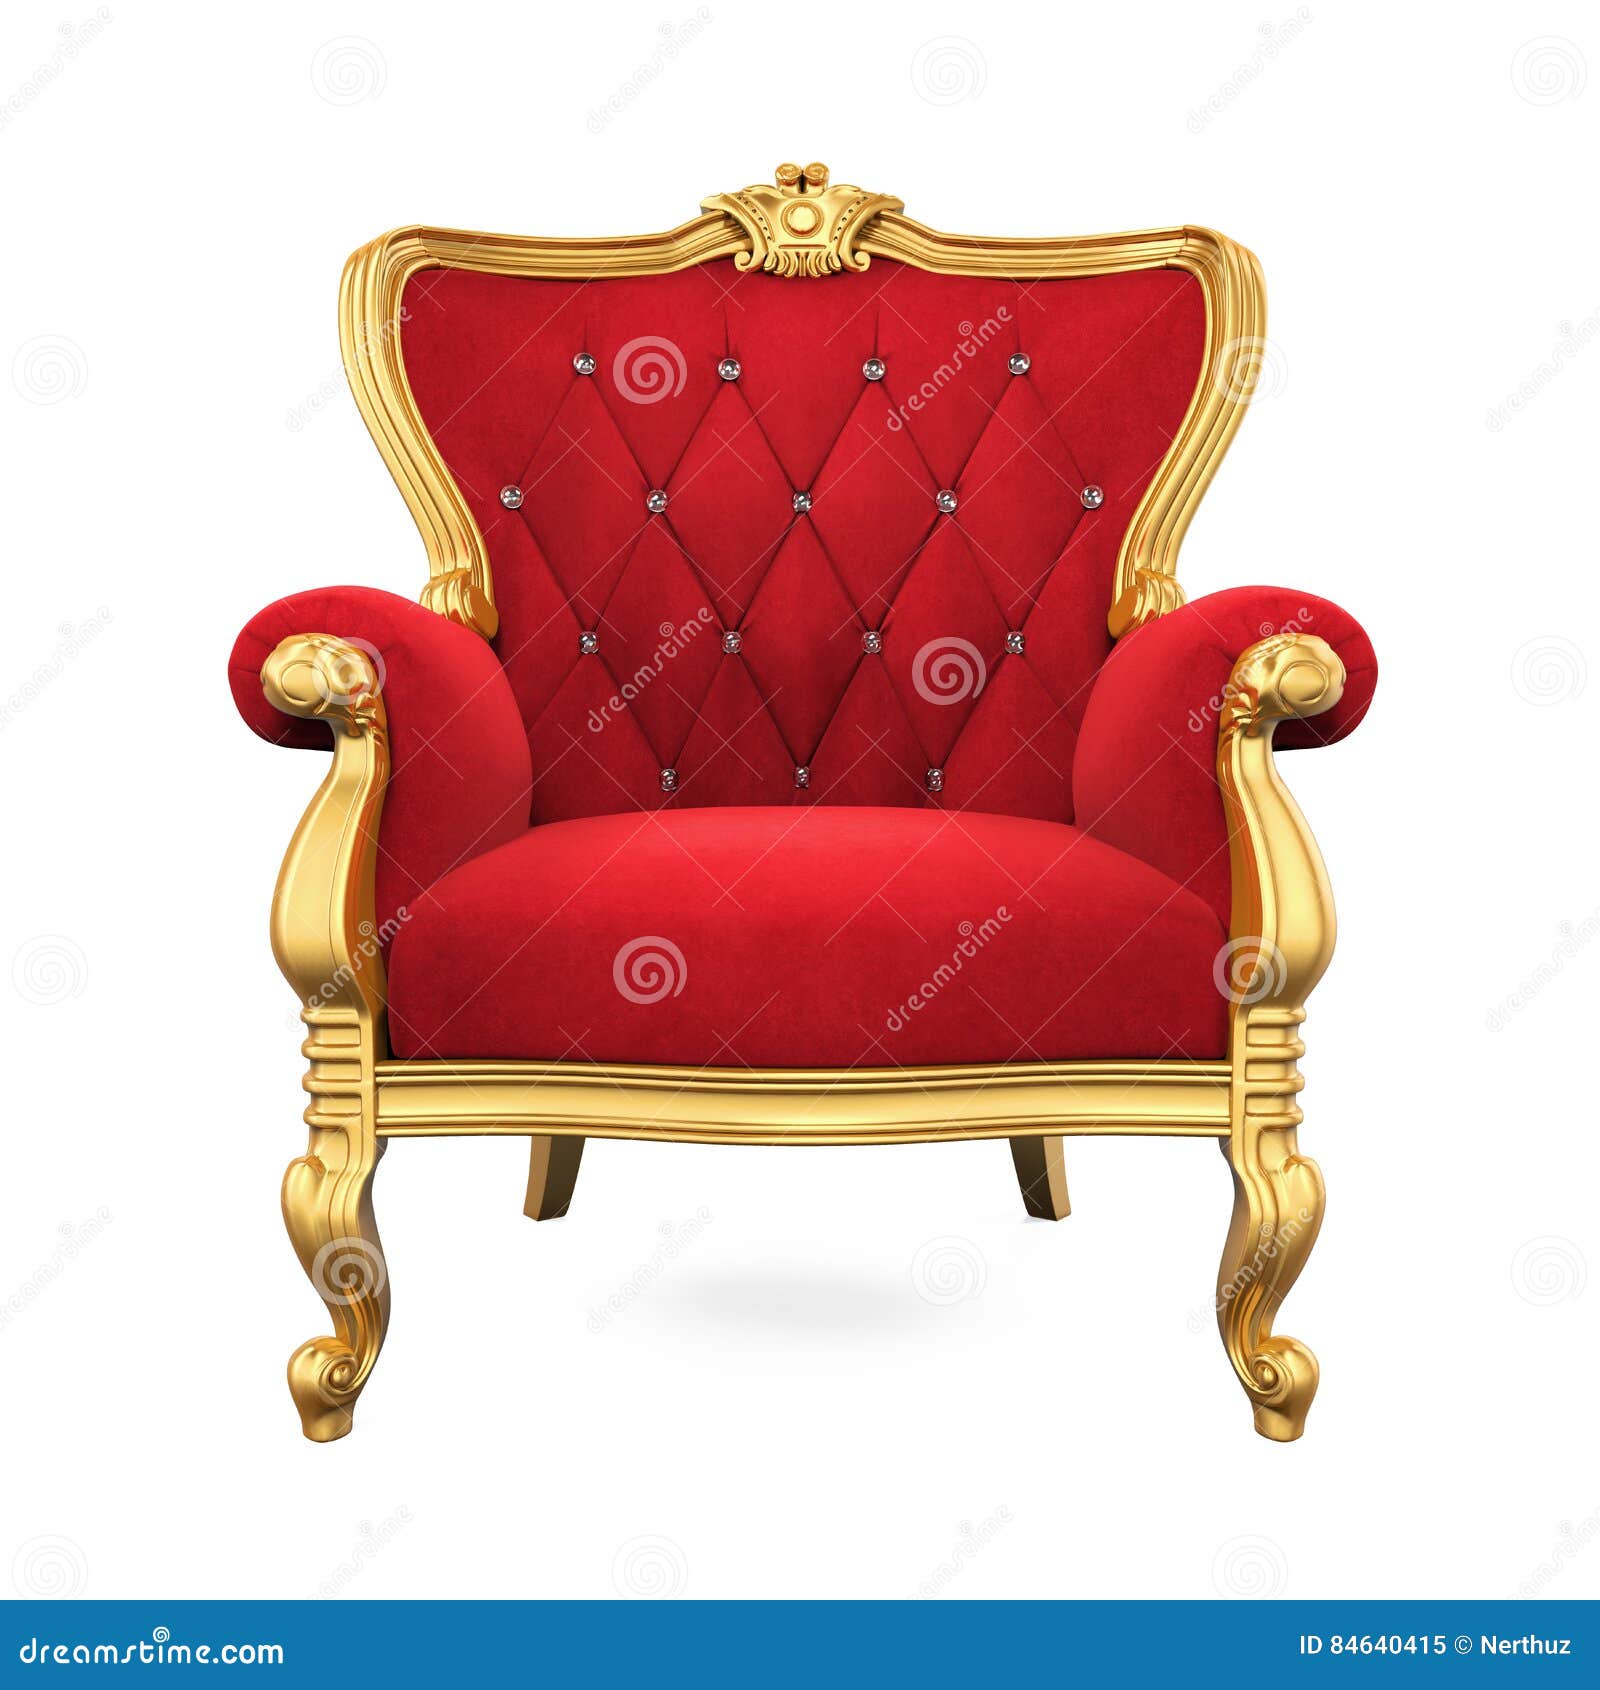 Làm đẹp ngôi nhà của bạn bằng sự sang trọng của Throne Chair Isolated. Thiết kế độc đáo, tinh tế và hoàn hảo sẽ mang lại cho bạn không gian sống thật ấm cúng và tiện nghi. Hãy đến với chúng tôi, để được trải nghiệm điều đó.